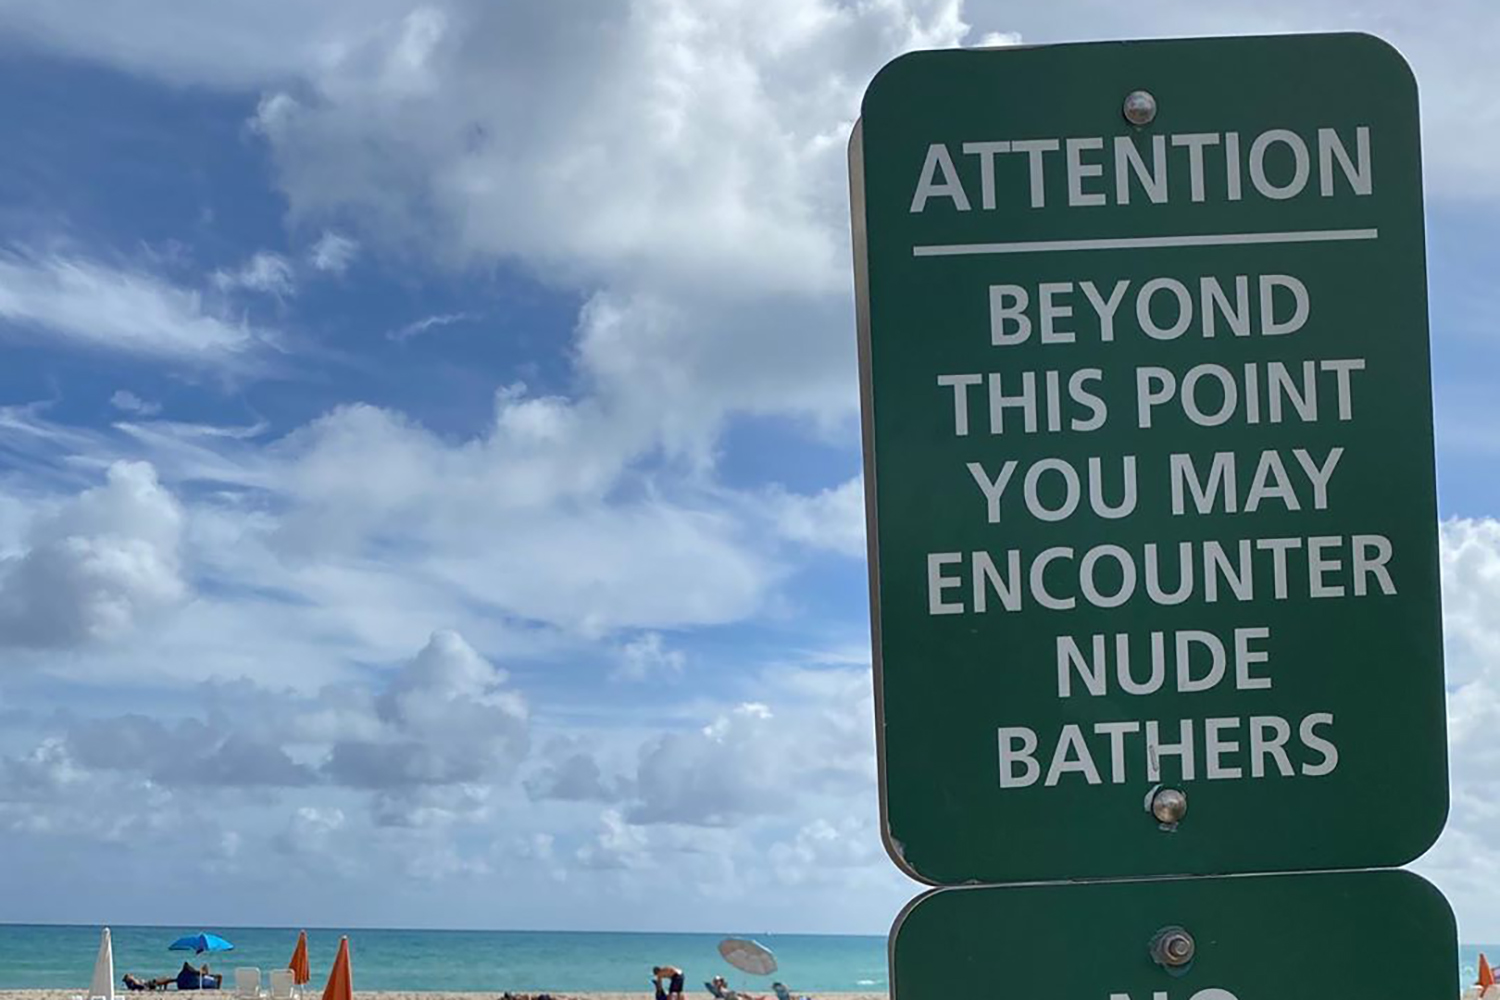 America Nudist Beach - Florida Senate Committee Okays Legal Nudity at Nude Beaches - InsideHook